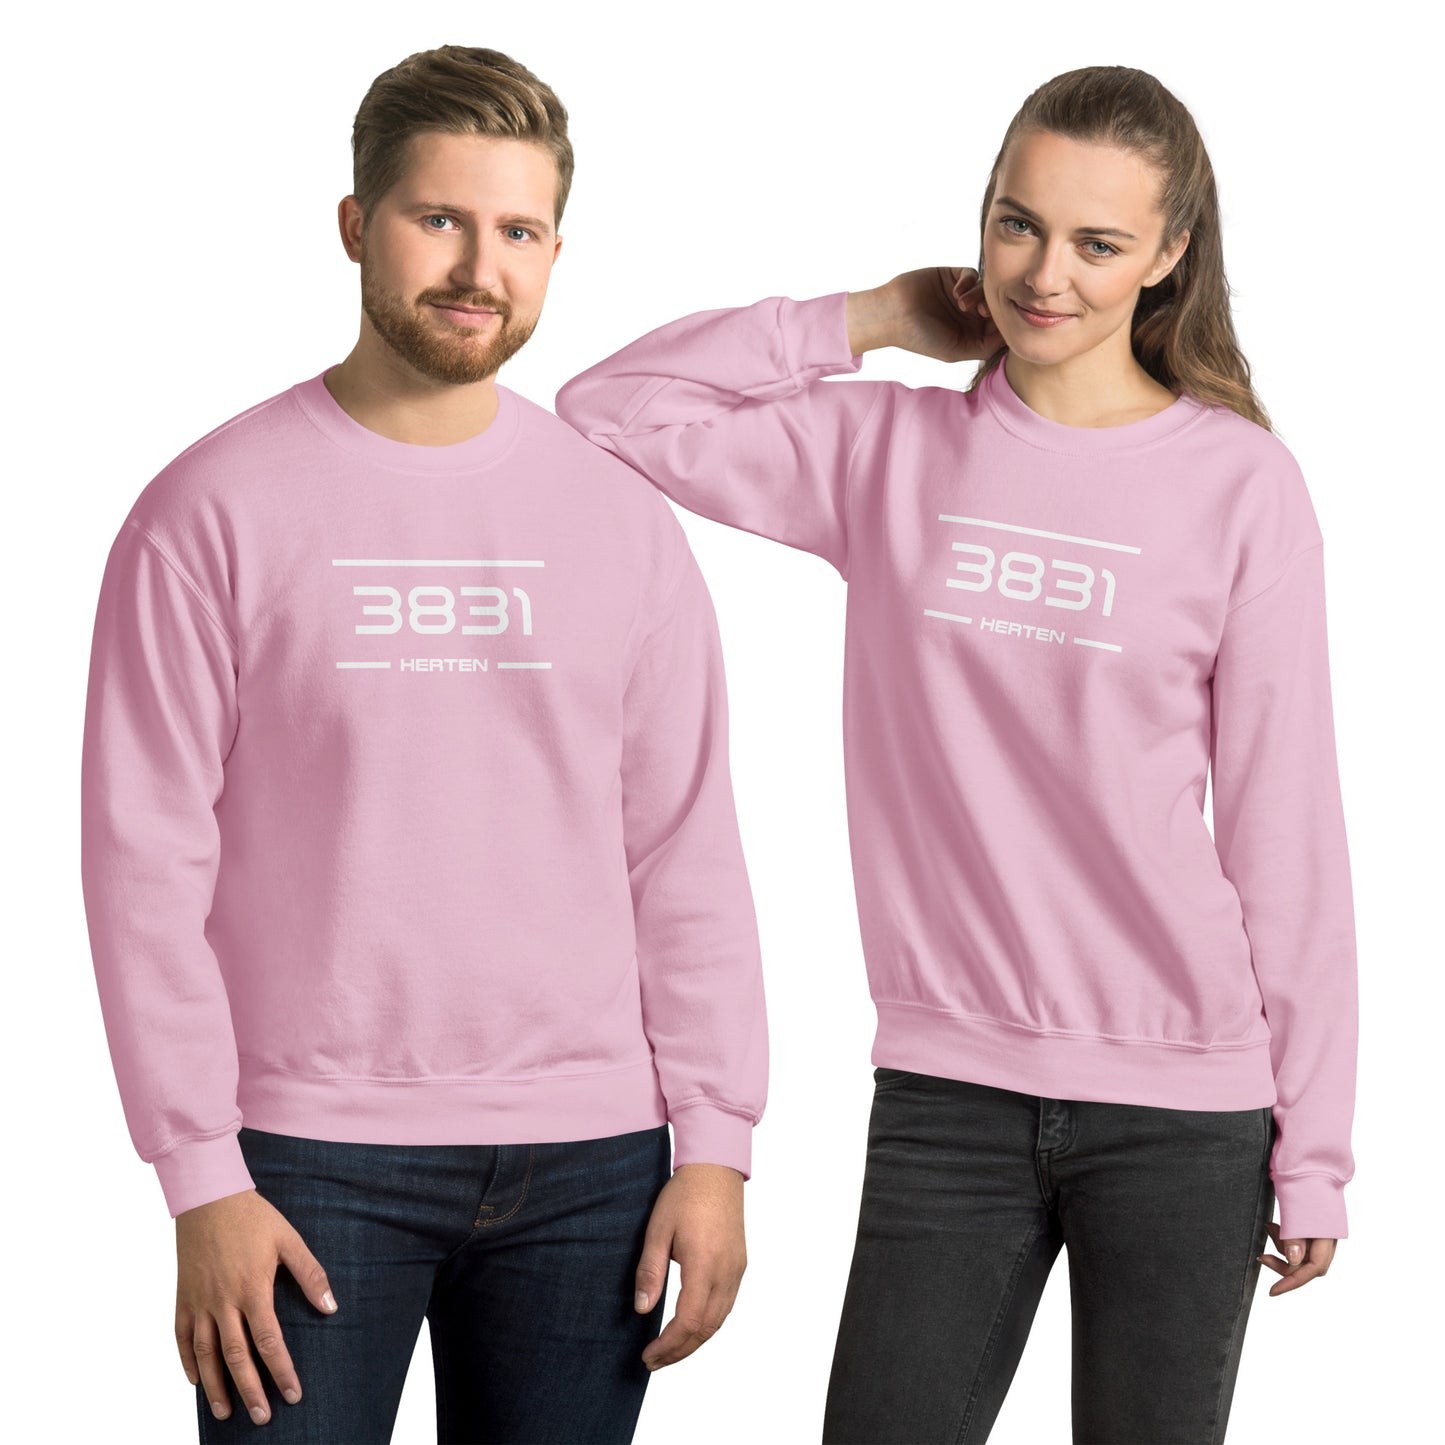 Sweater - 3831 - Herten (M/V)